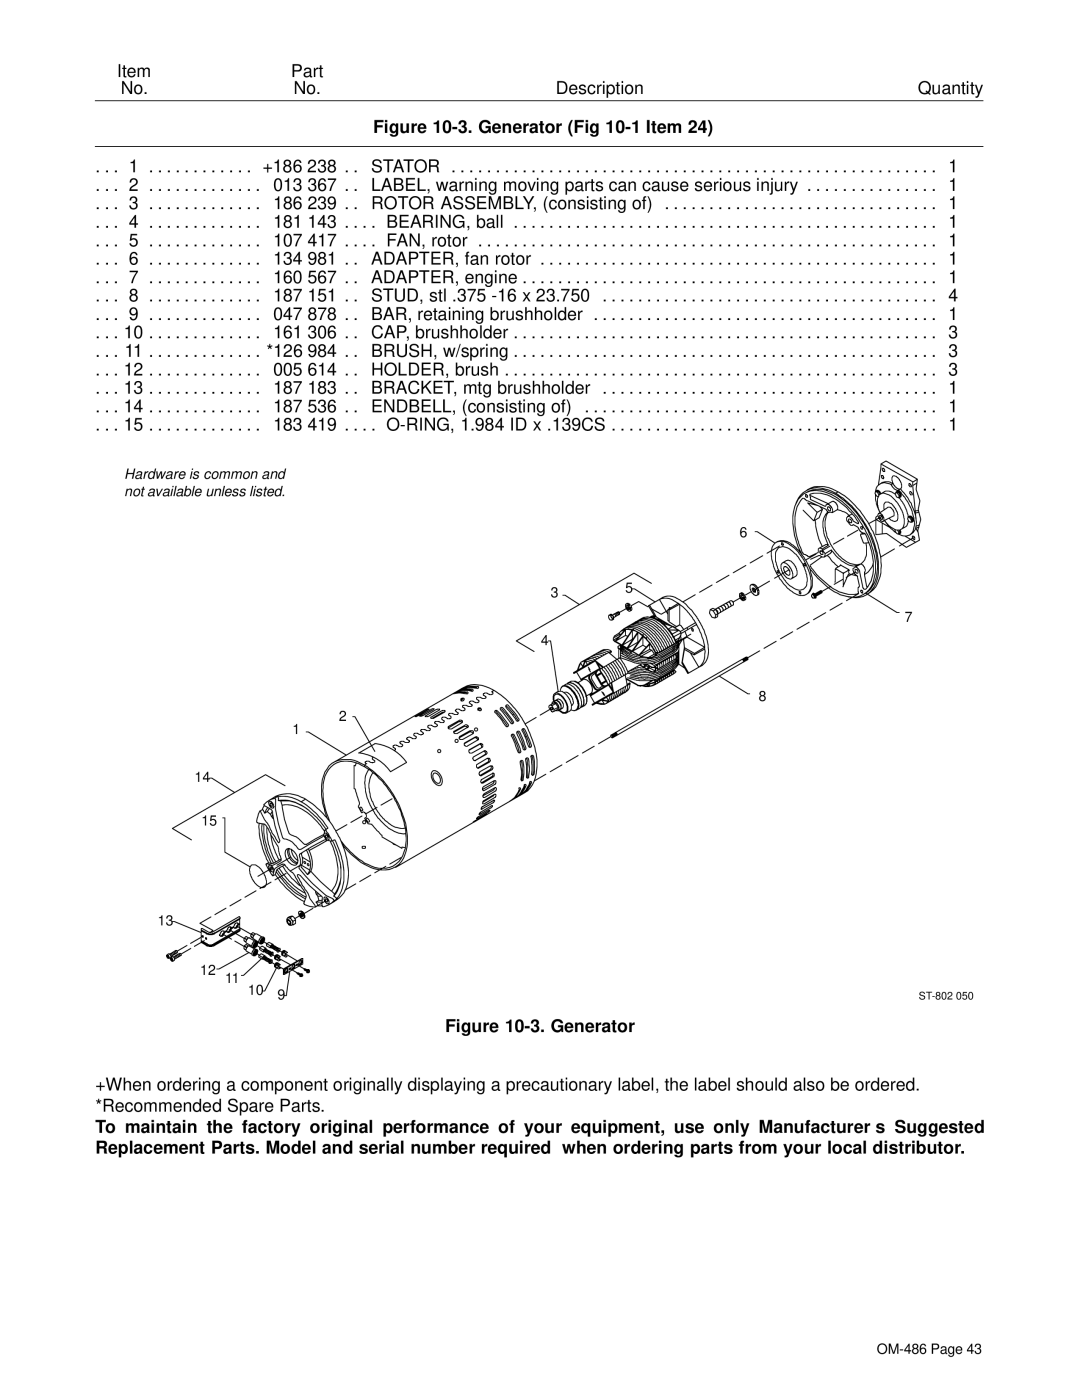 Miller Electric 251 NT manual Generator -1 Item 